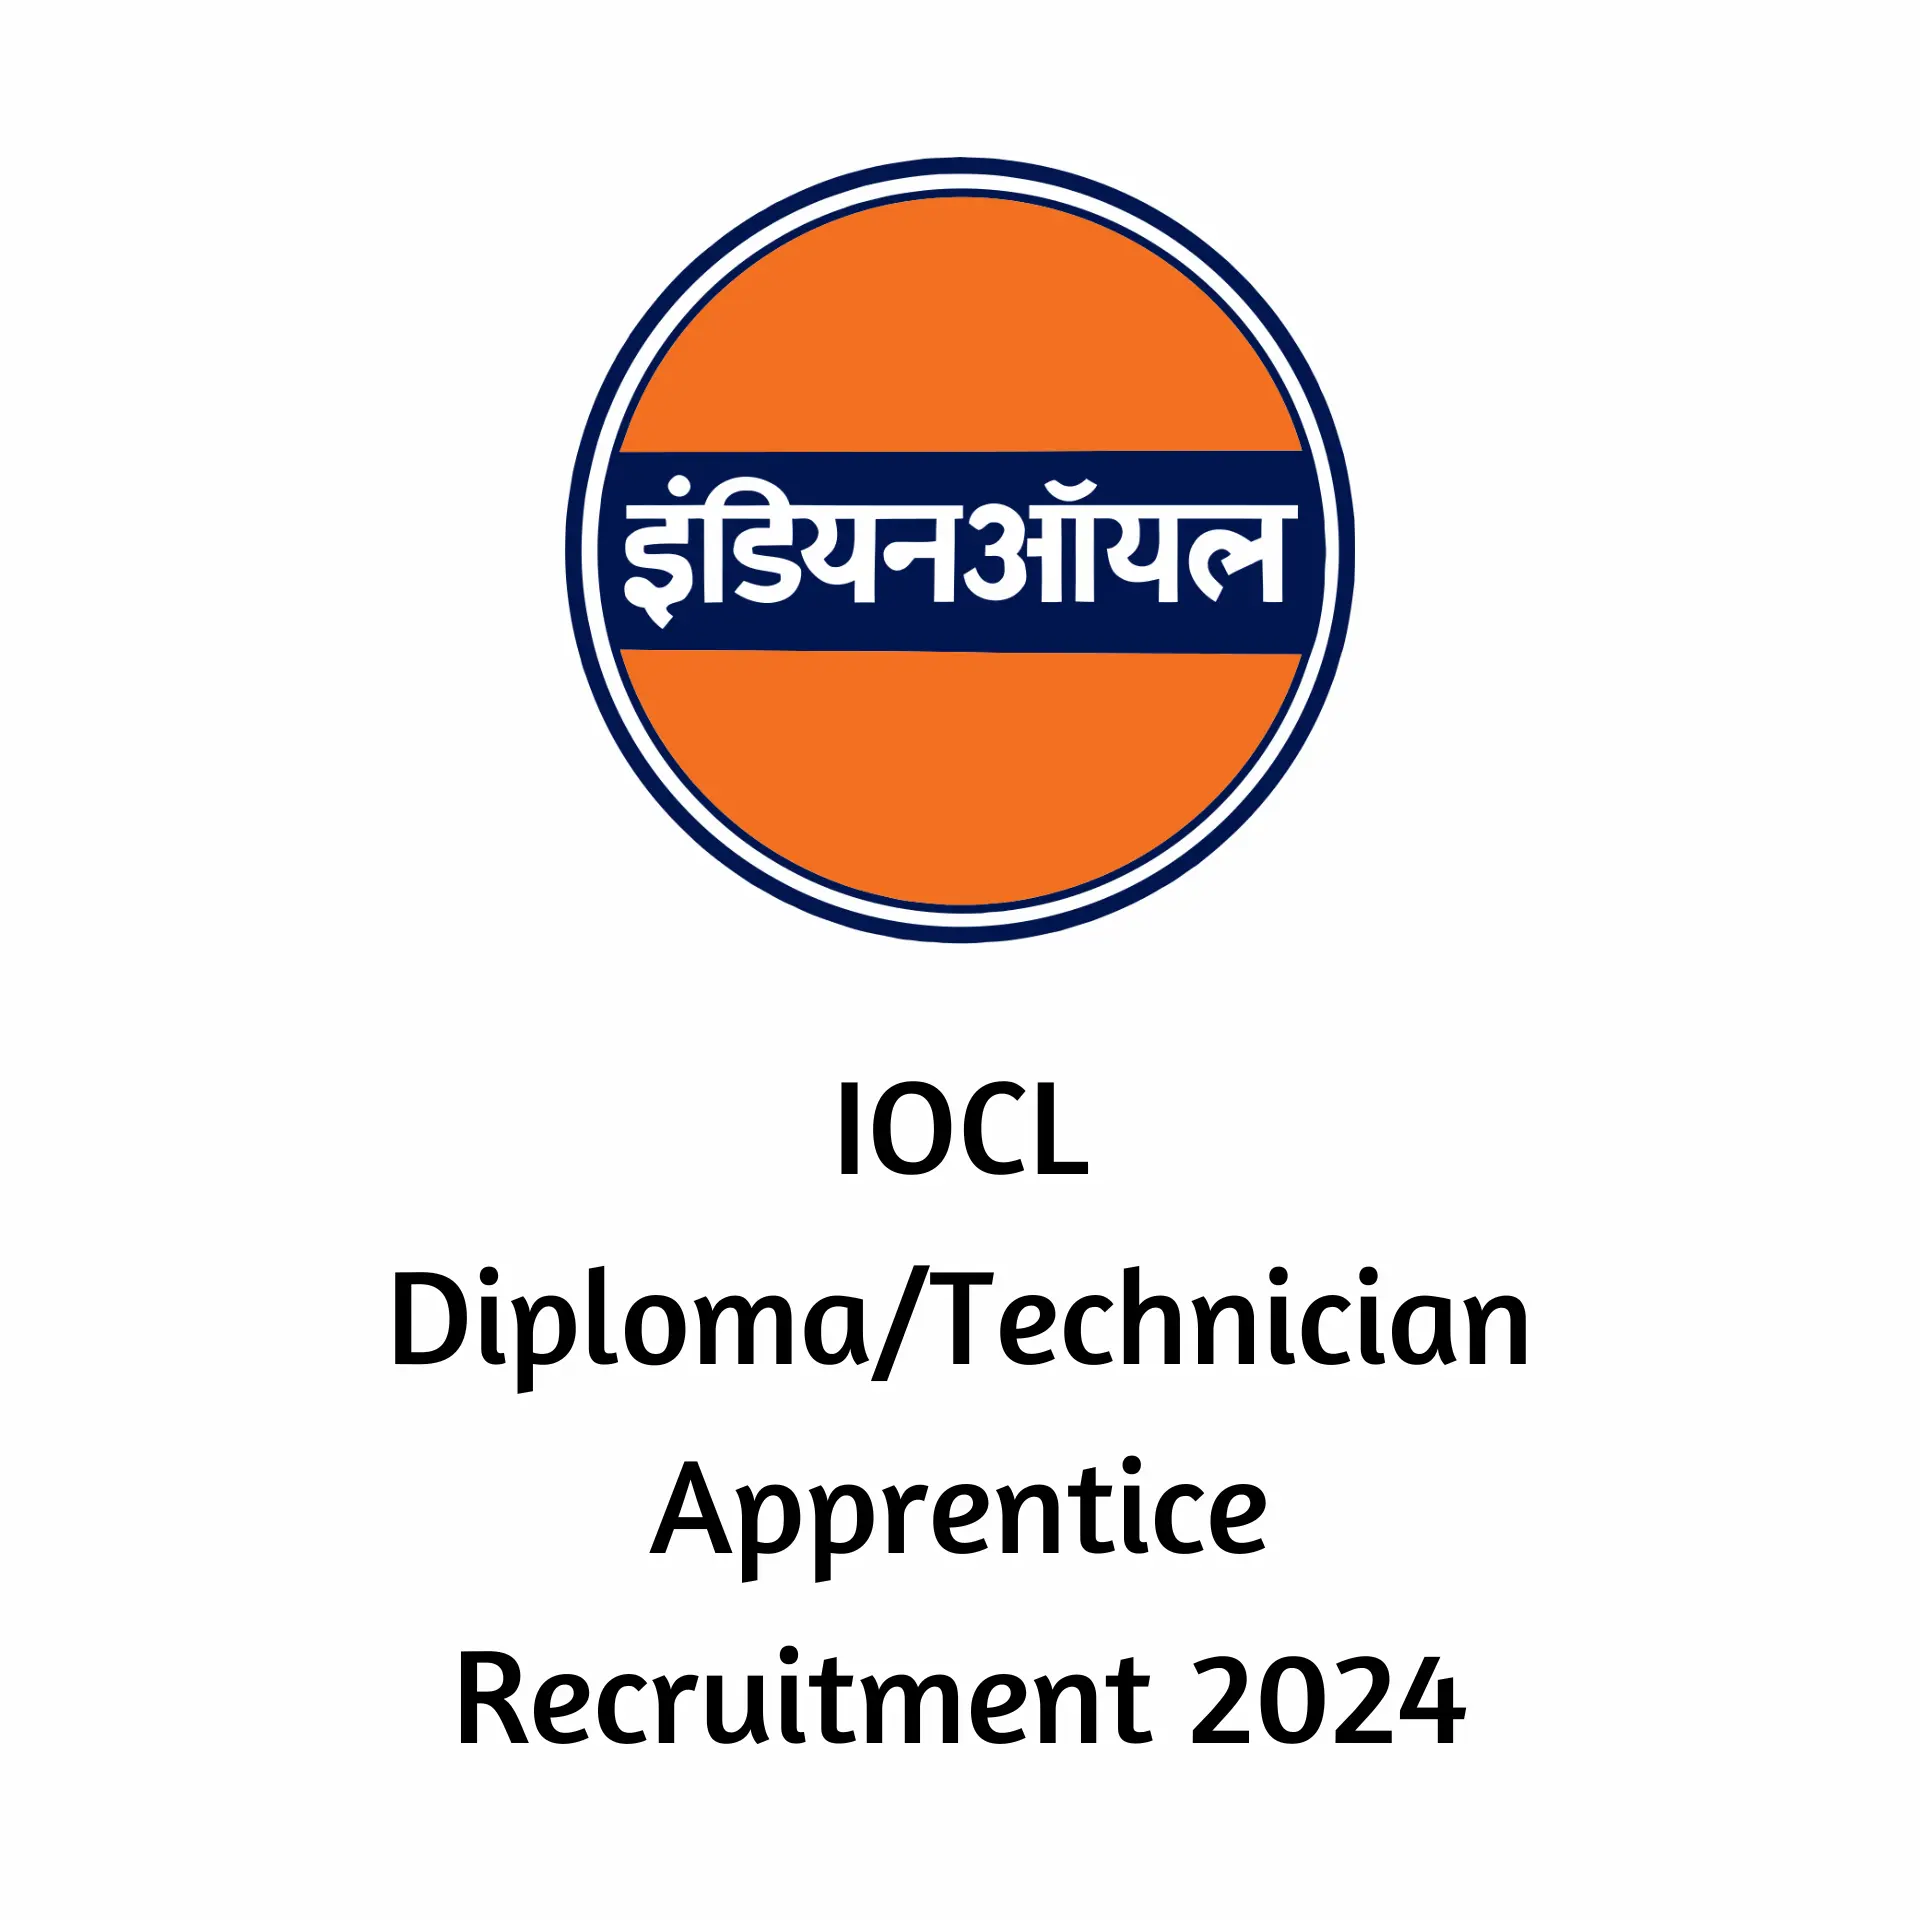 IOCL Diploma/Technician Apprentice Recruitment 2024, Exam Date